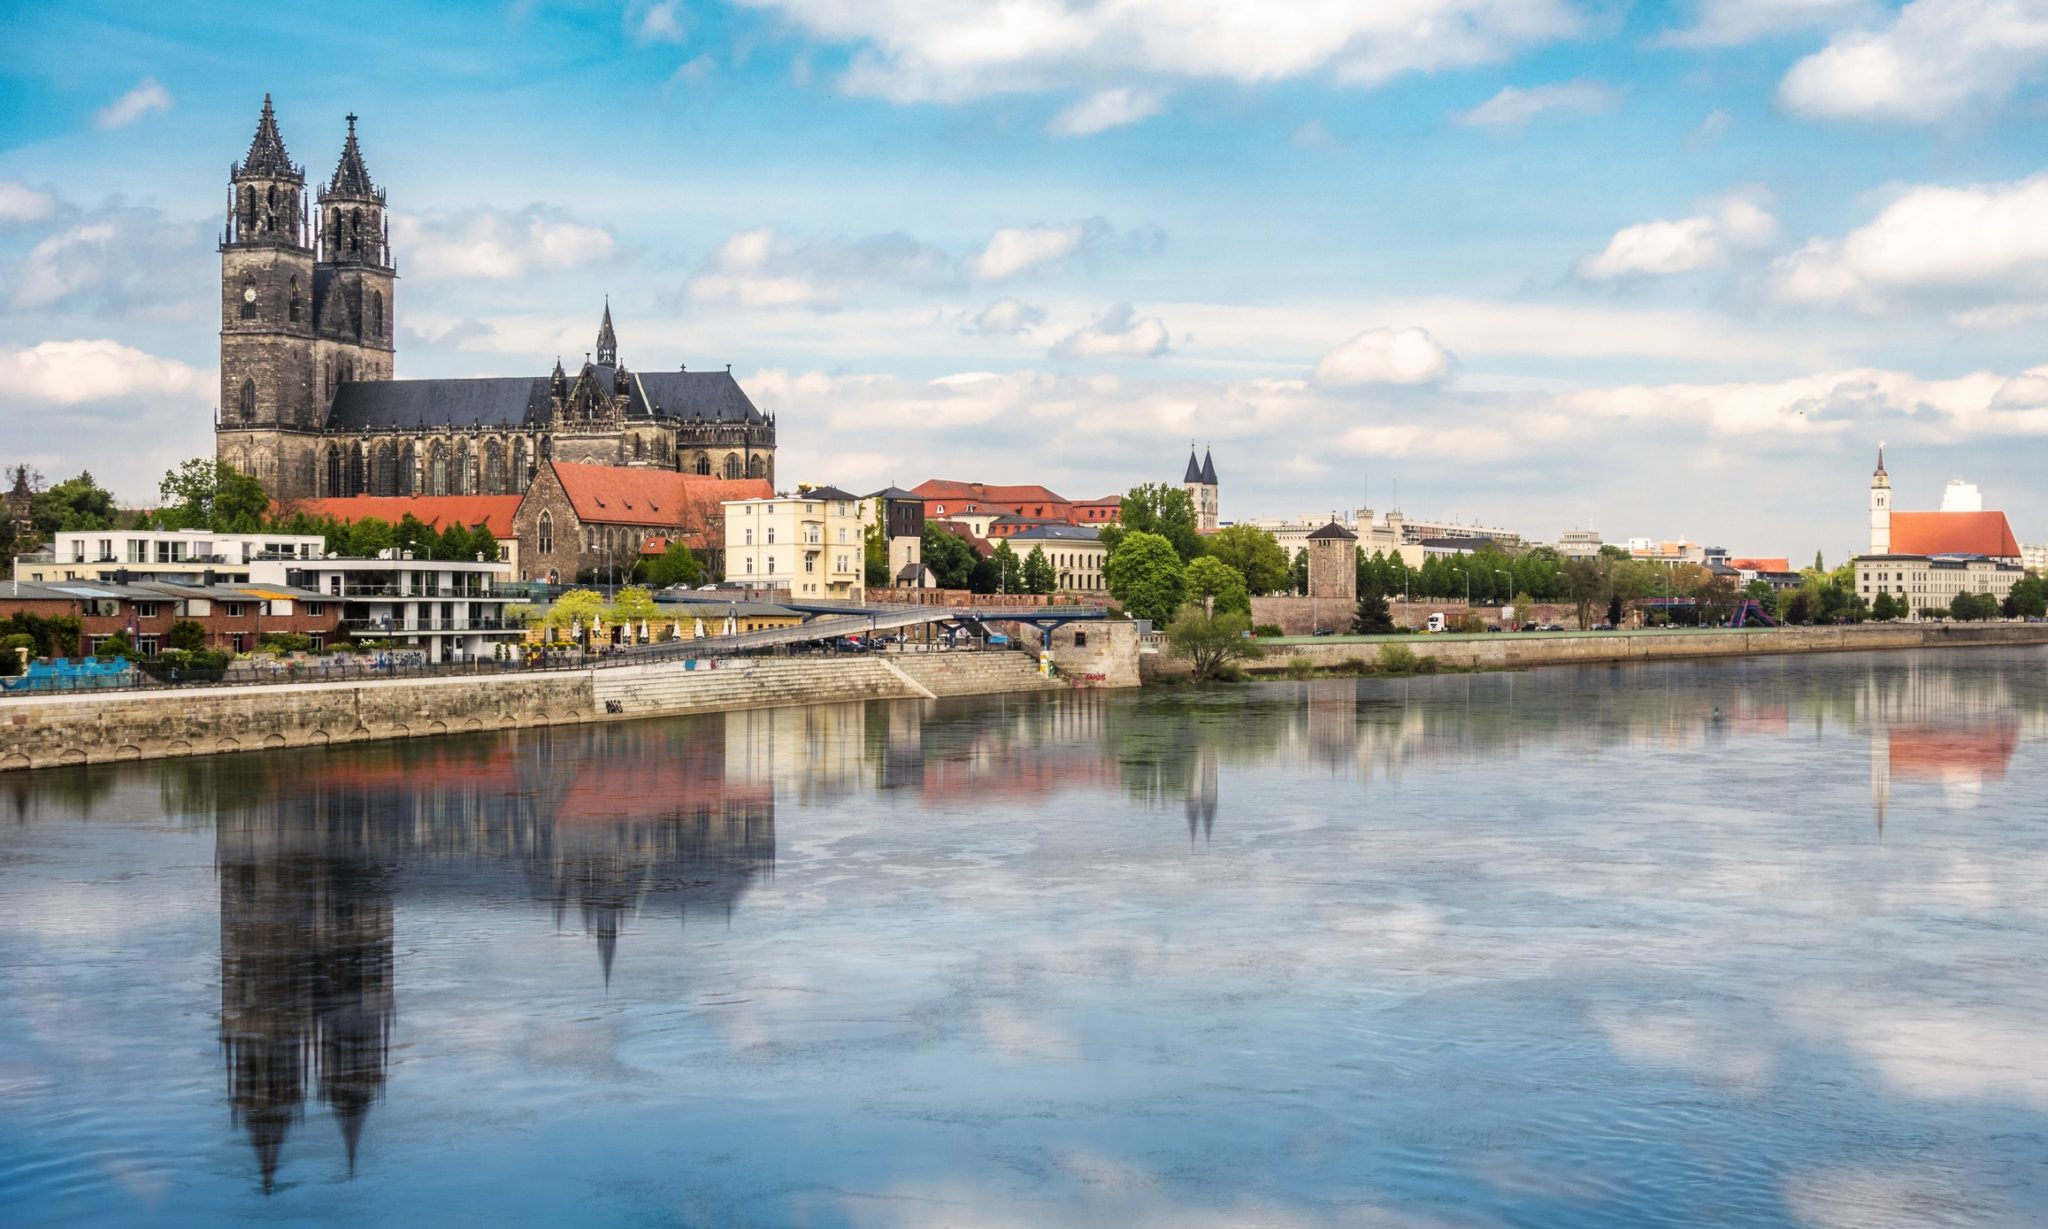 Haushaltsauflösung und Entrümpelung in Magdeburg